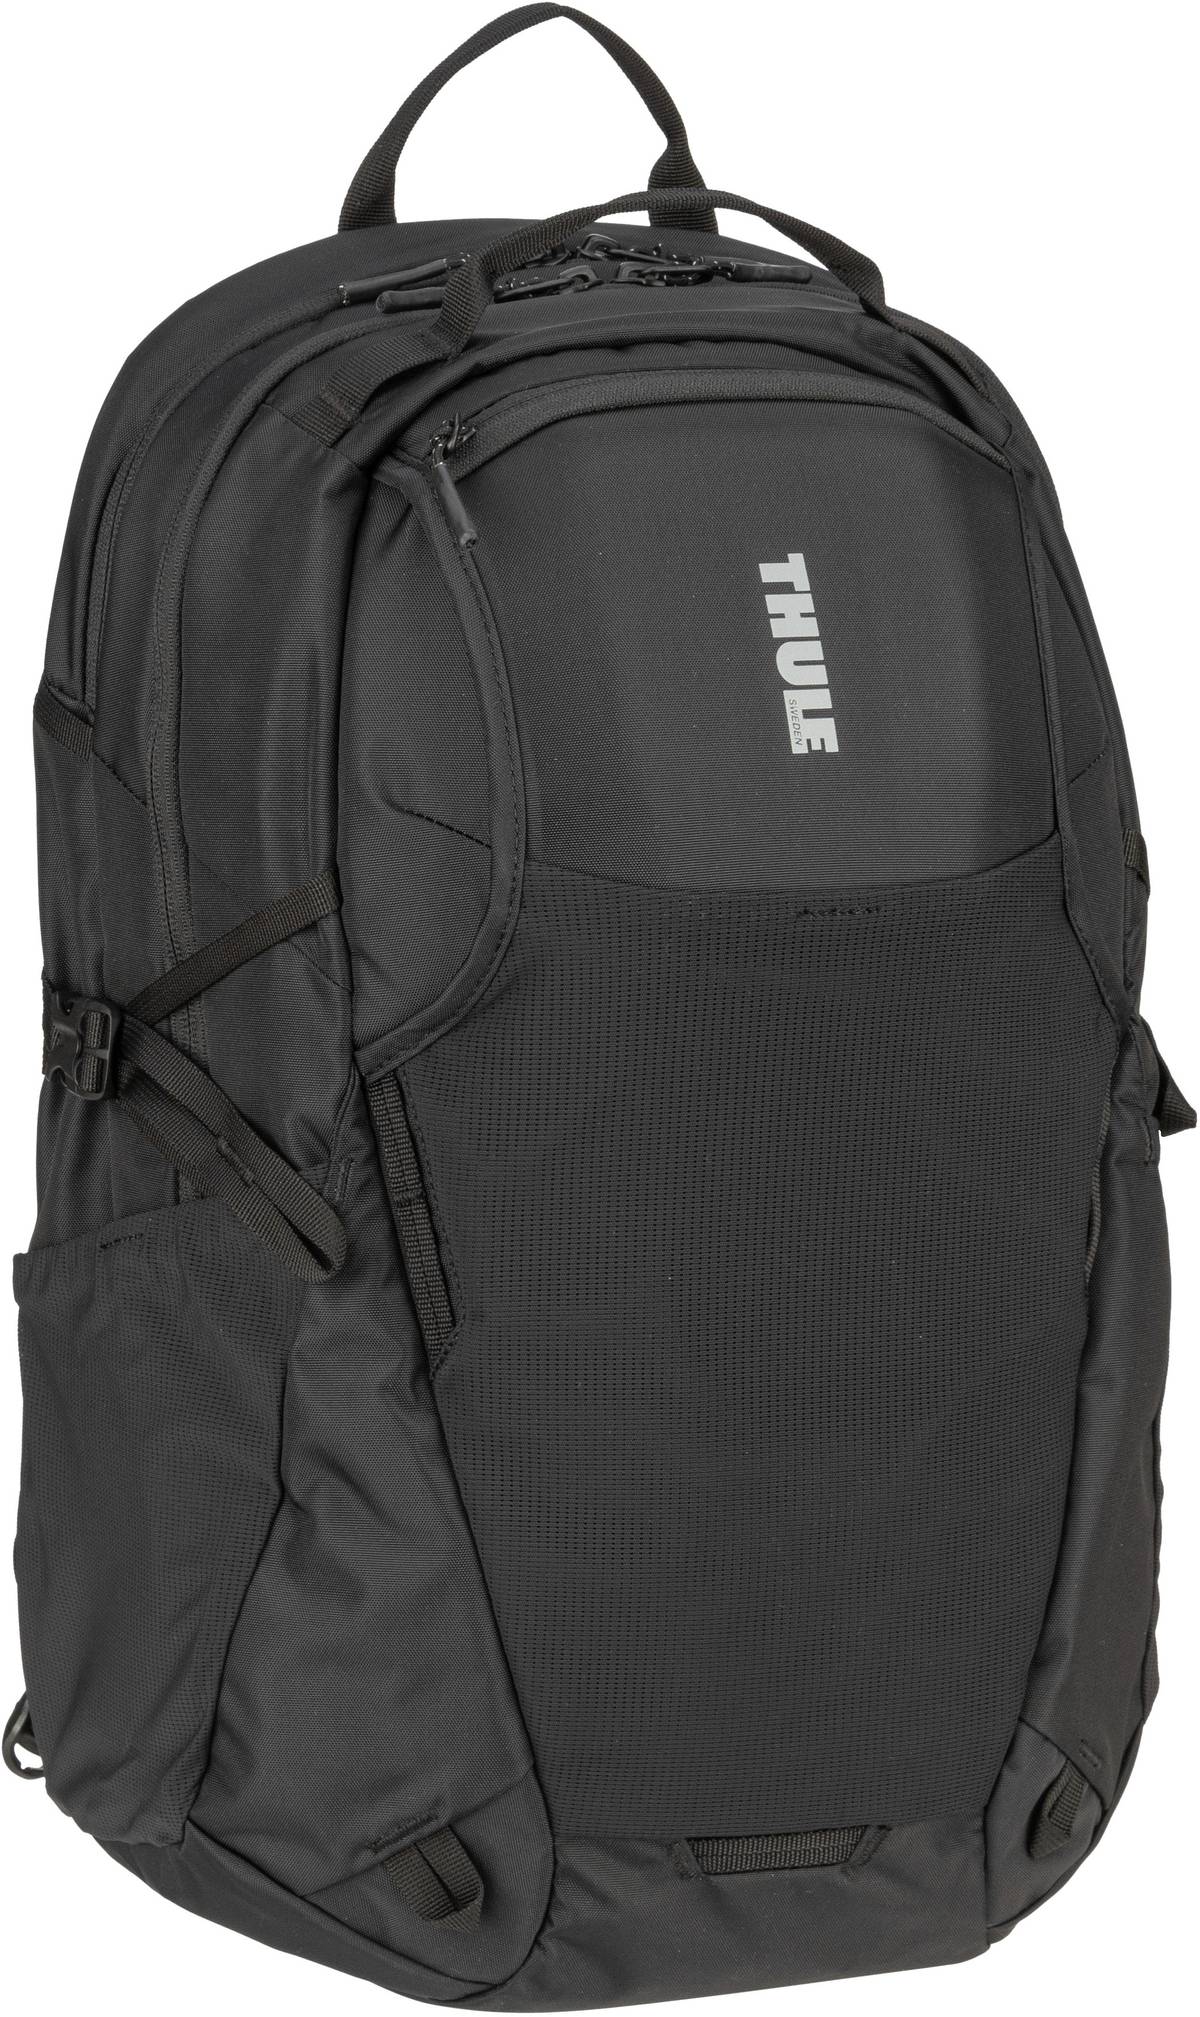 Thule Thule EnRoute Backpack 26L in Schwarz (26 Liter), Rucksack / Backpack